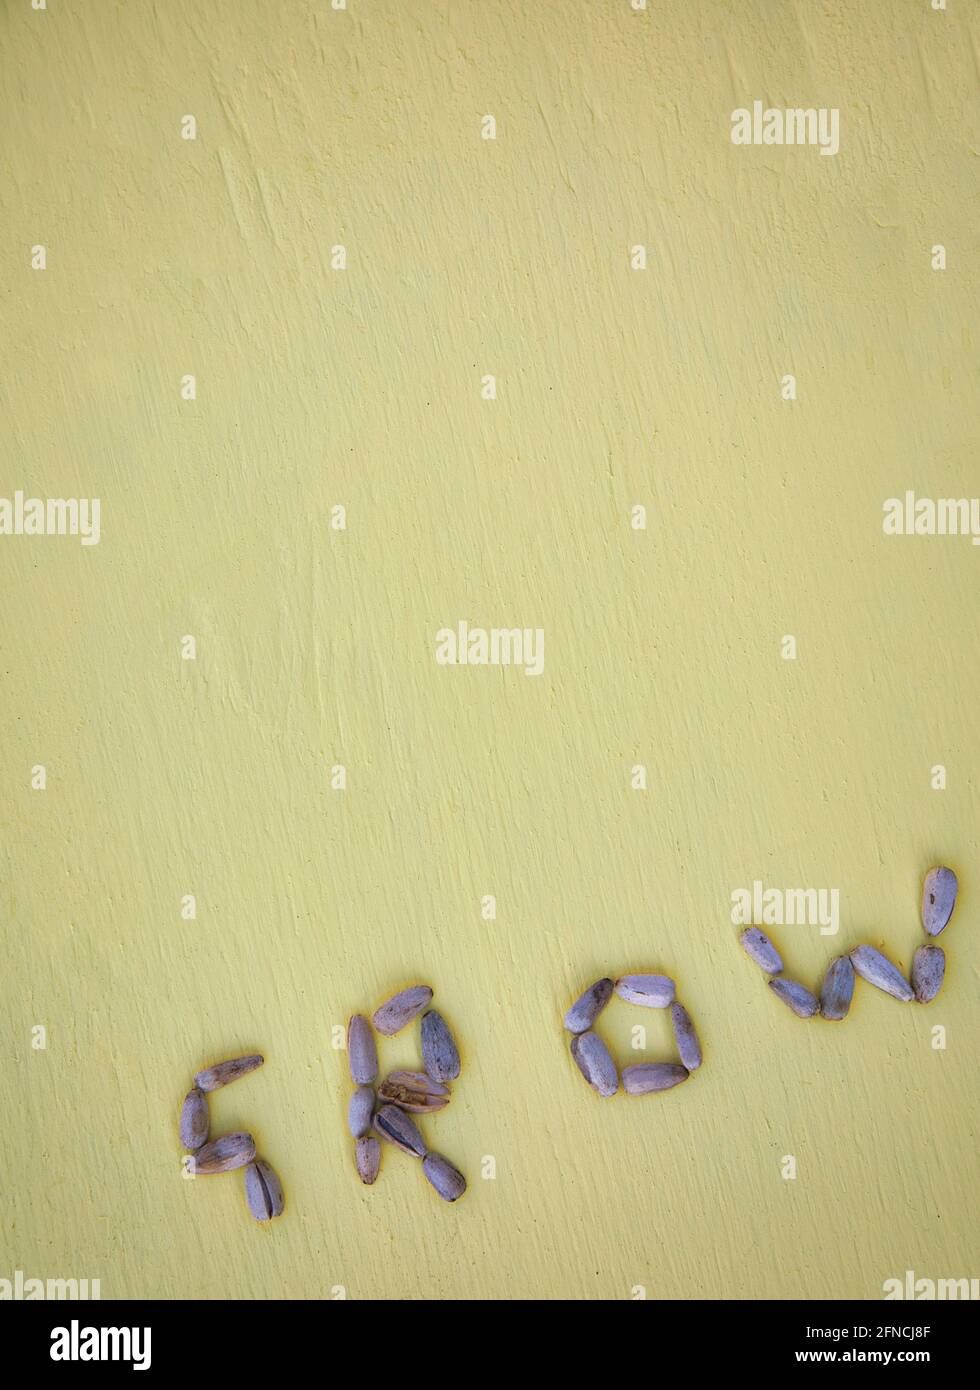 La palabra crece a partir de semillas de girasol (Helianthus) sobre fondo amarillo texturizado. Concepto de crecimiento, principios, naturaleza, Foto de stock